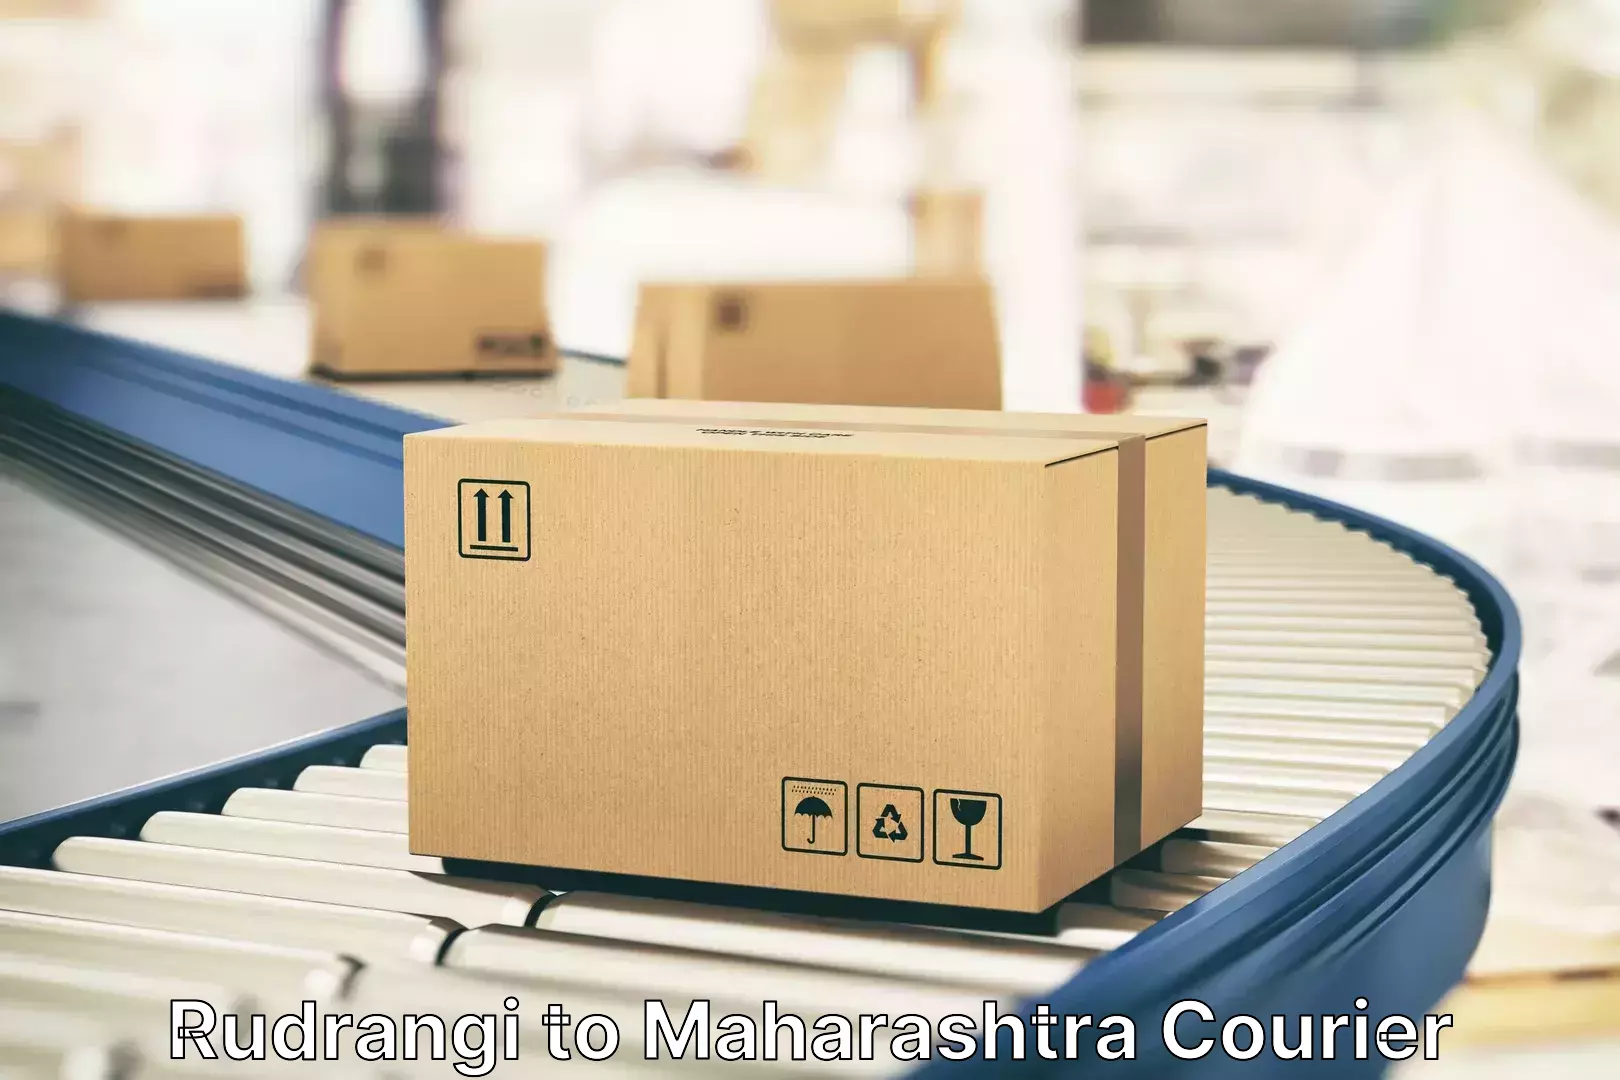 Luggage shipping rates calculator Rudrangi to Maharashtra